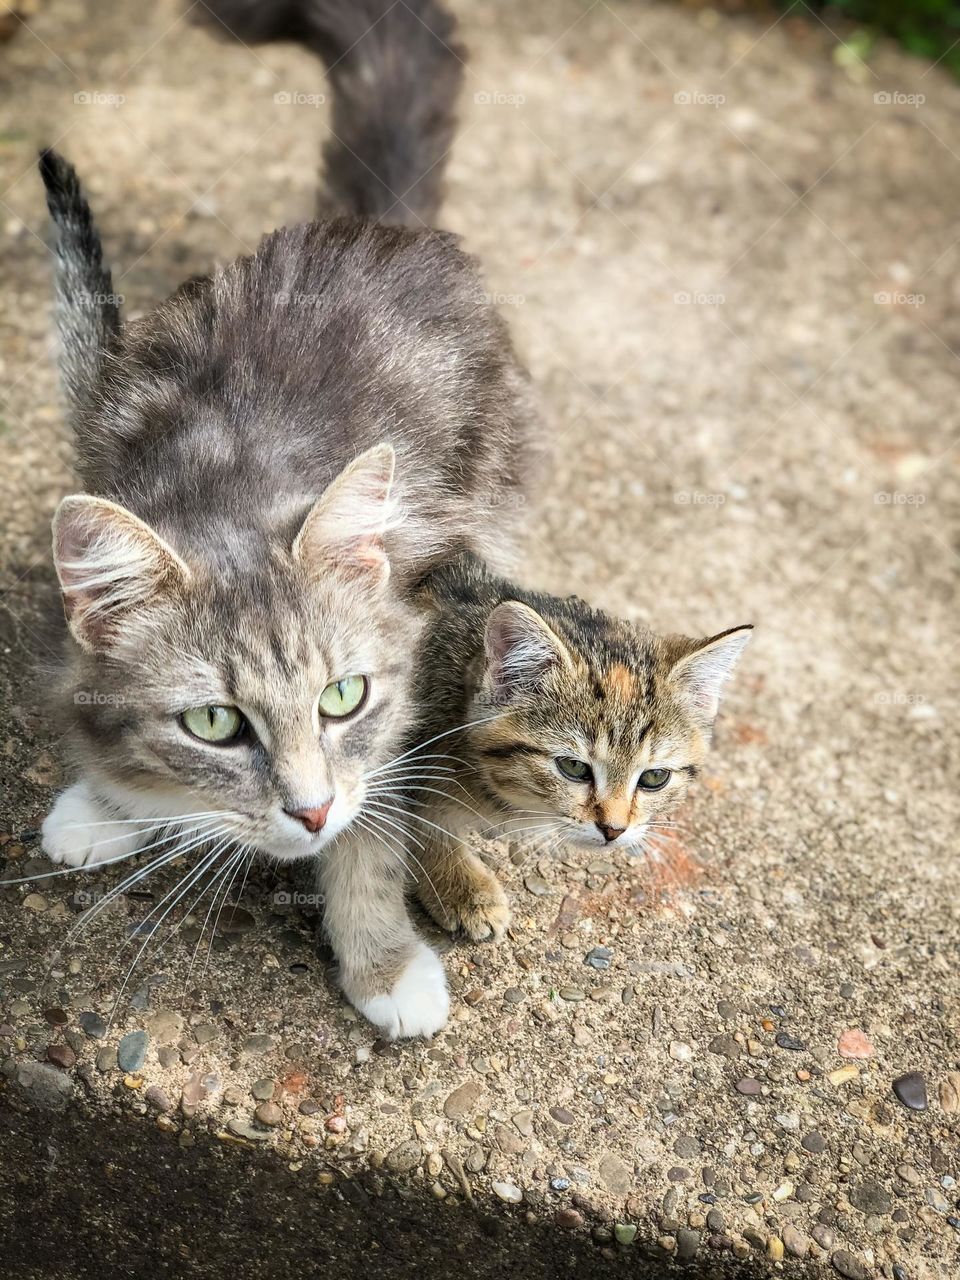 Sidewalk cats